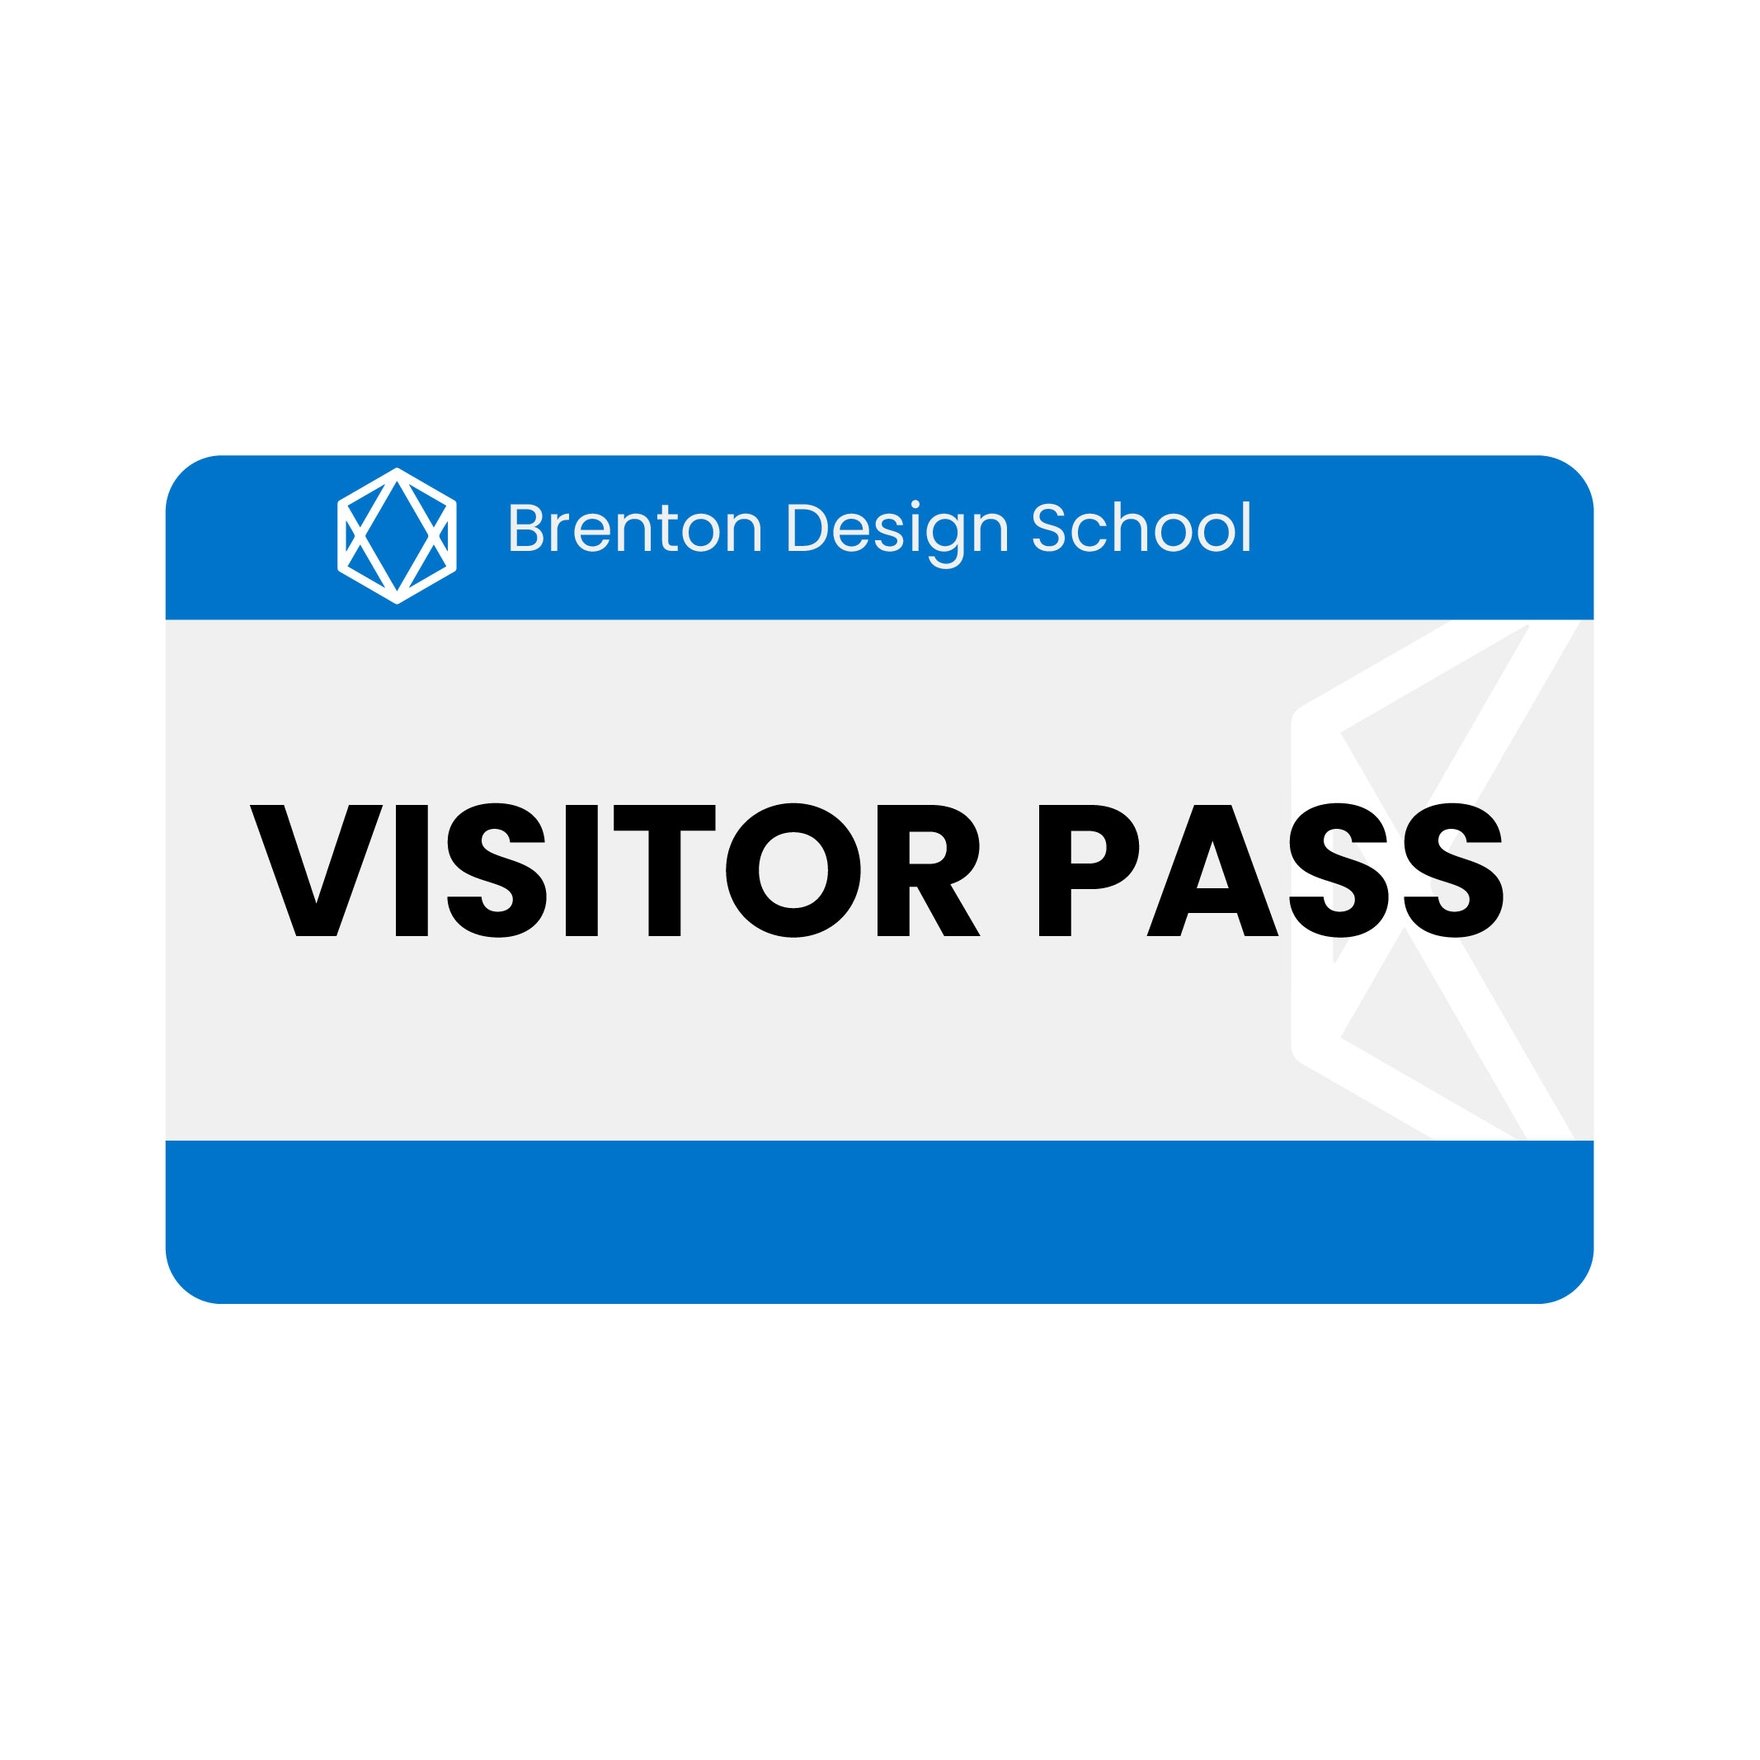 Free Visitor Badge Download in Illustrator, EPS, SVG, JPG, PNG